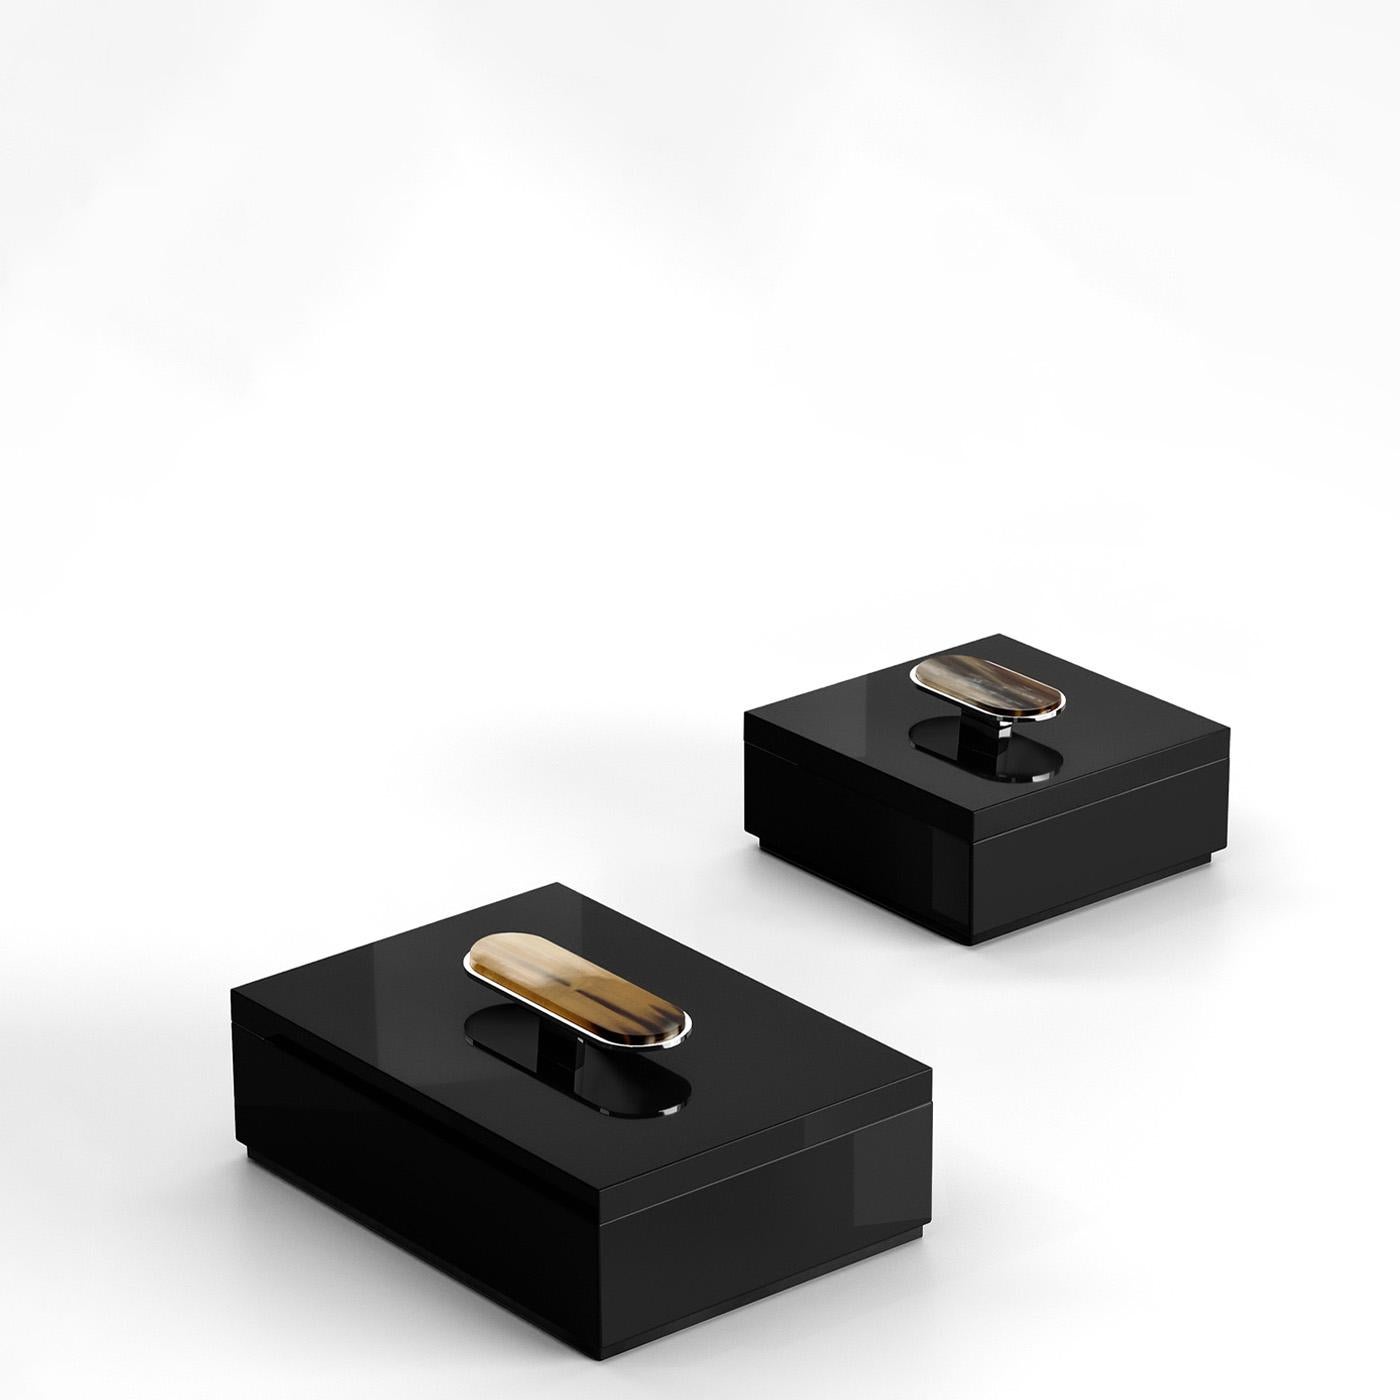 Die Priora-Box strahlt eine raffinierte Ästhetik und eine große Liebe zum Detail aus, die sie zum ultimativen Accessoire für die Aufbewahrung Ihrer persönlichen Gegenstände macht. Die aus glänzend schwarz lackiertem Holz gefertigte Box hat einen